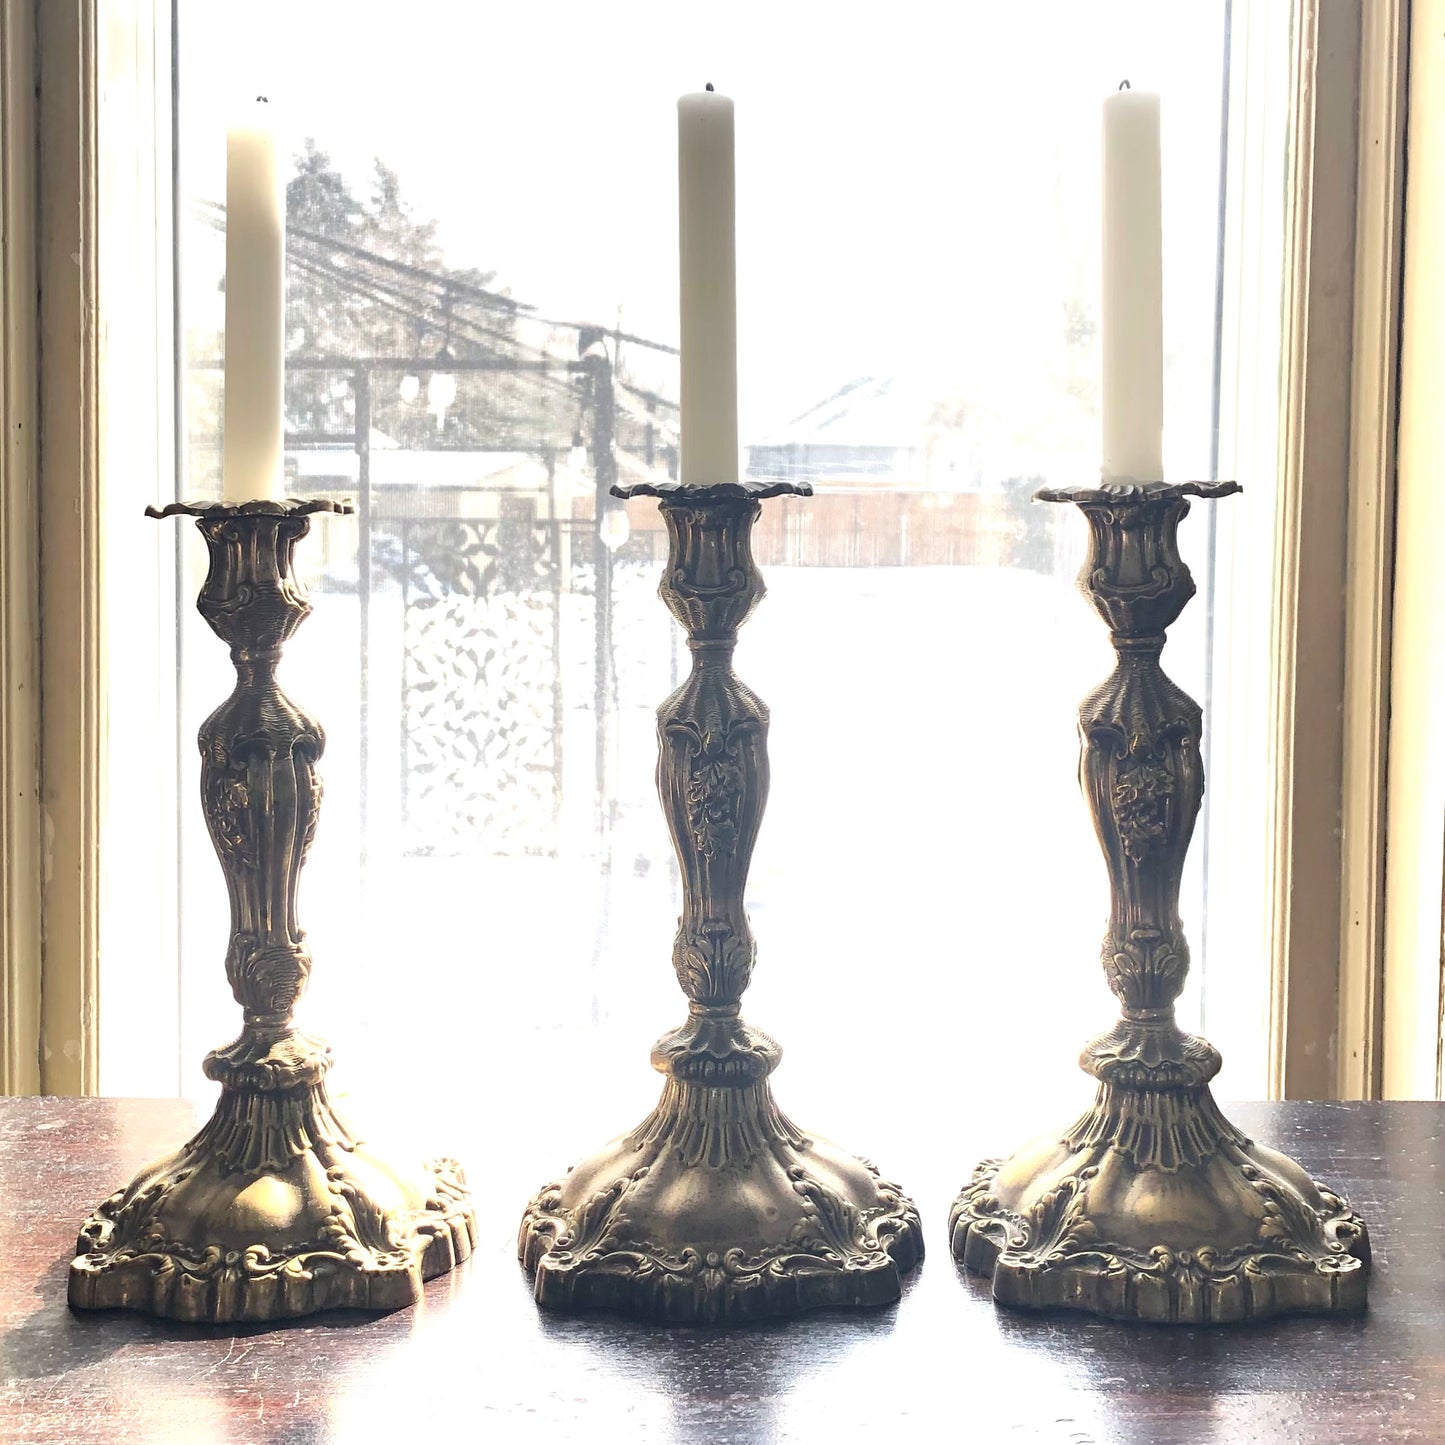 Brass Plated Candlesticks, 11"